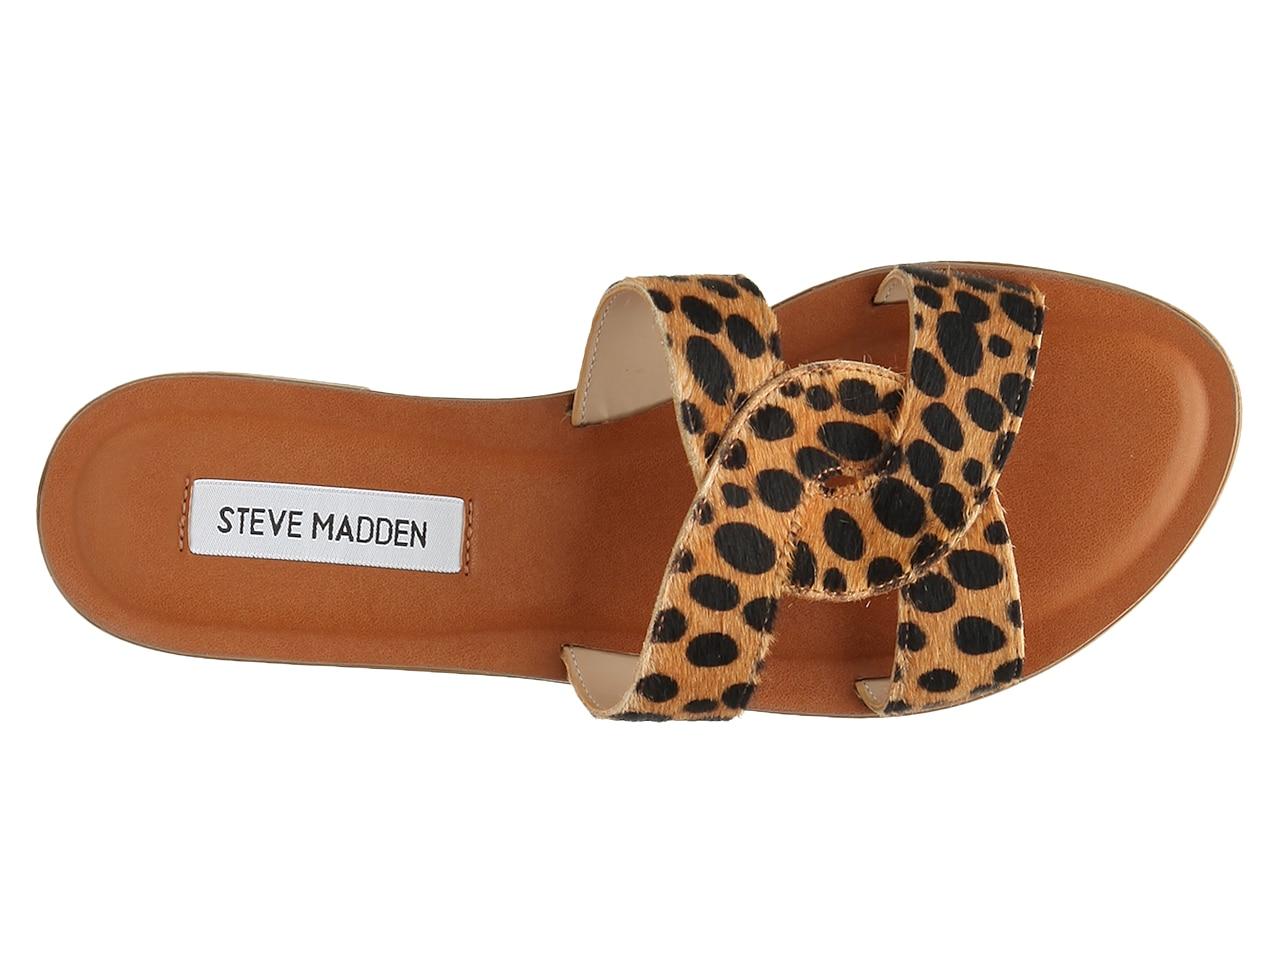 Steve Madden Havana Sandal in Brown/Black Cheetah Print (Brown) - Lyst